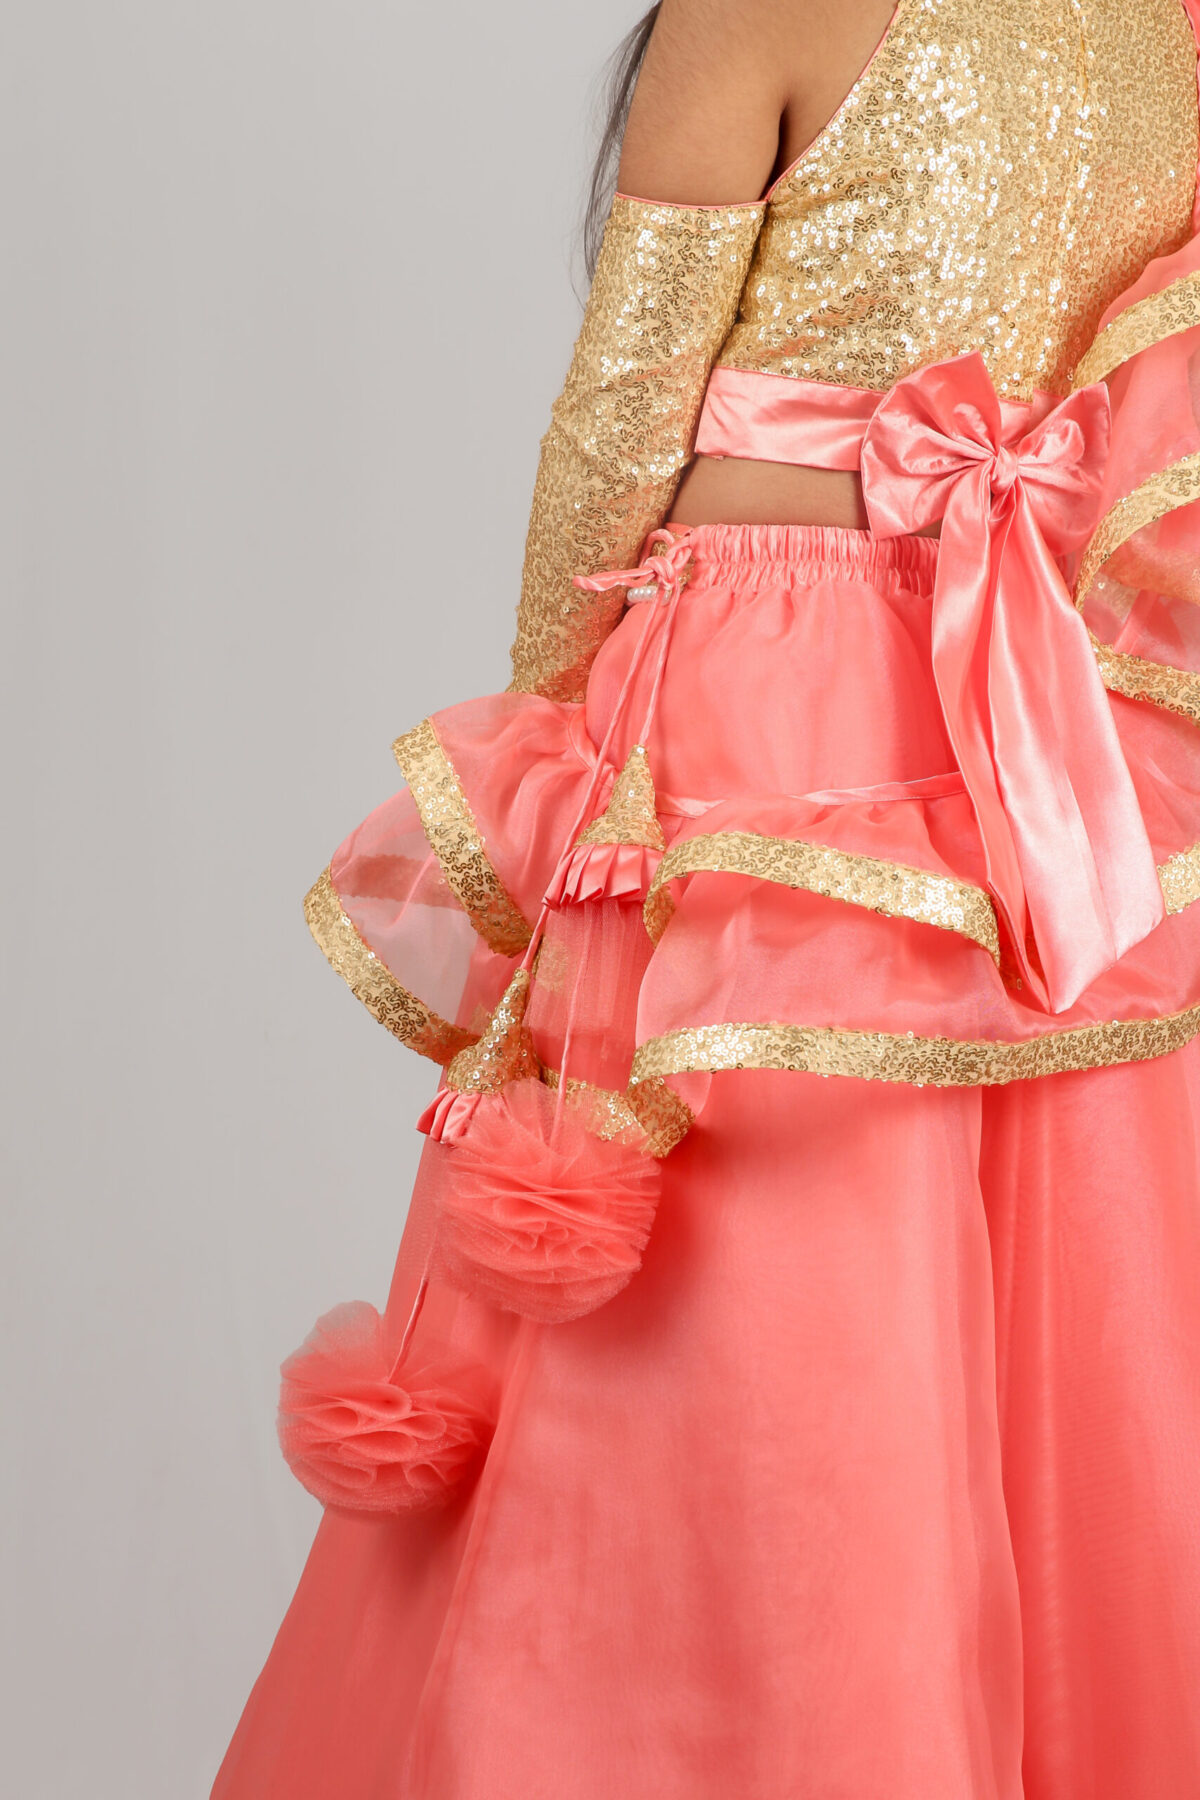 IMG 9979 2 scaled Blush Pink Princess style Lehenga Choli with Potli Bag